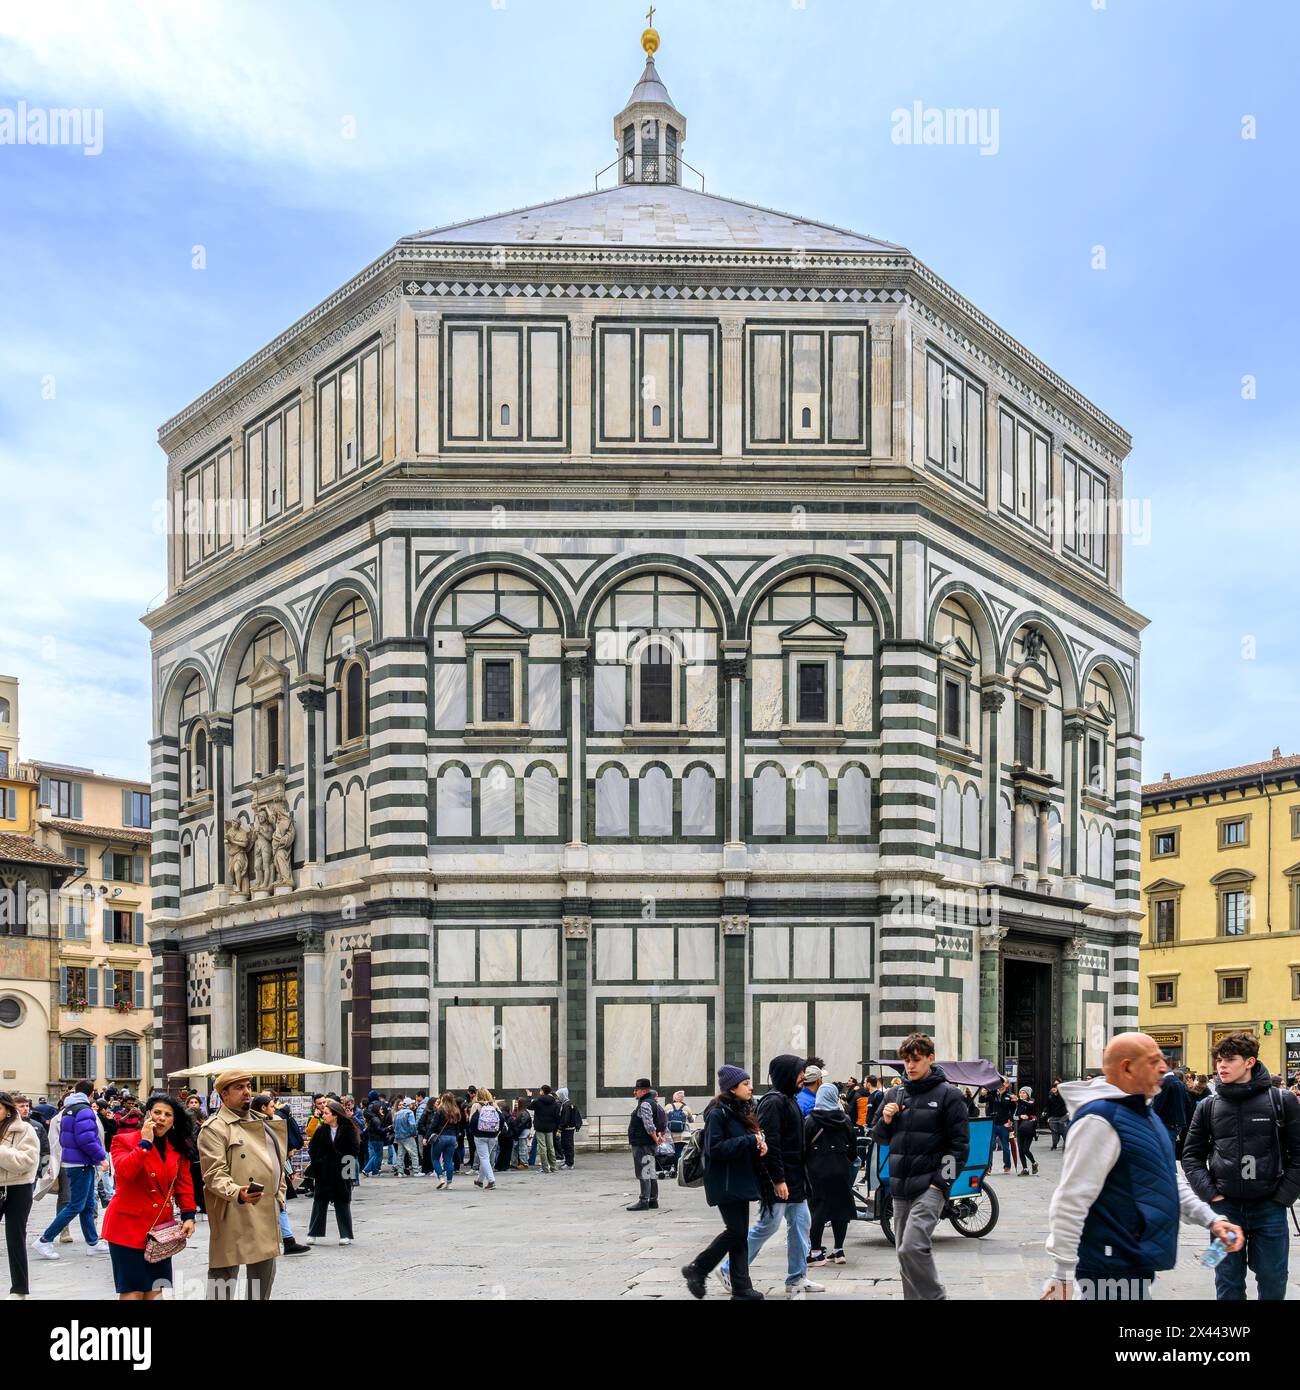 Achteckiges Baptisterium des Heiligen Johannes (Battistero di San Giovanni) gegenüber der Kathedrale Santa Maria del Fiore - die berühmtesten Gebäude in Florenz. Stockfoto